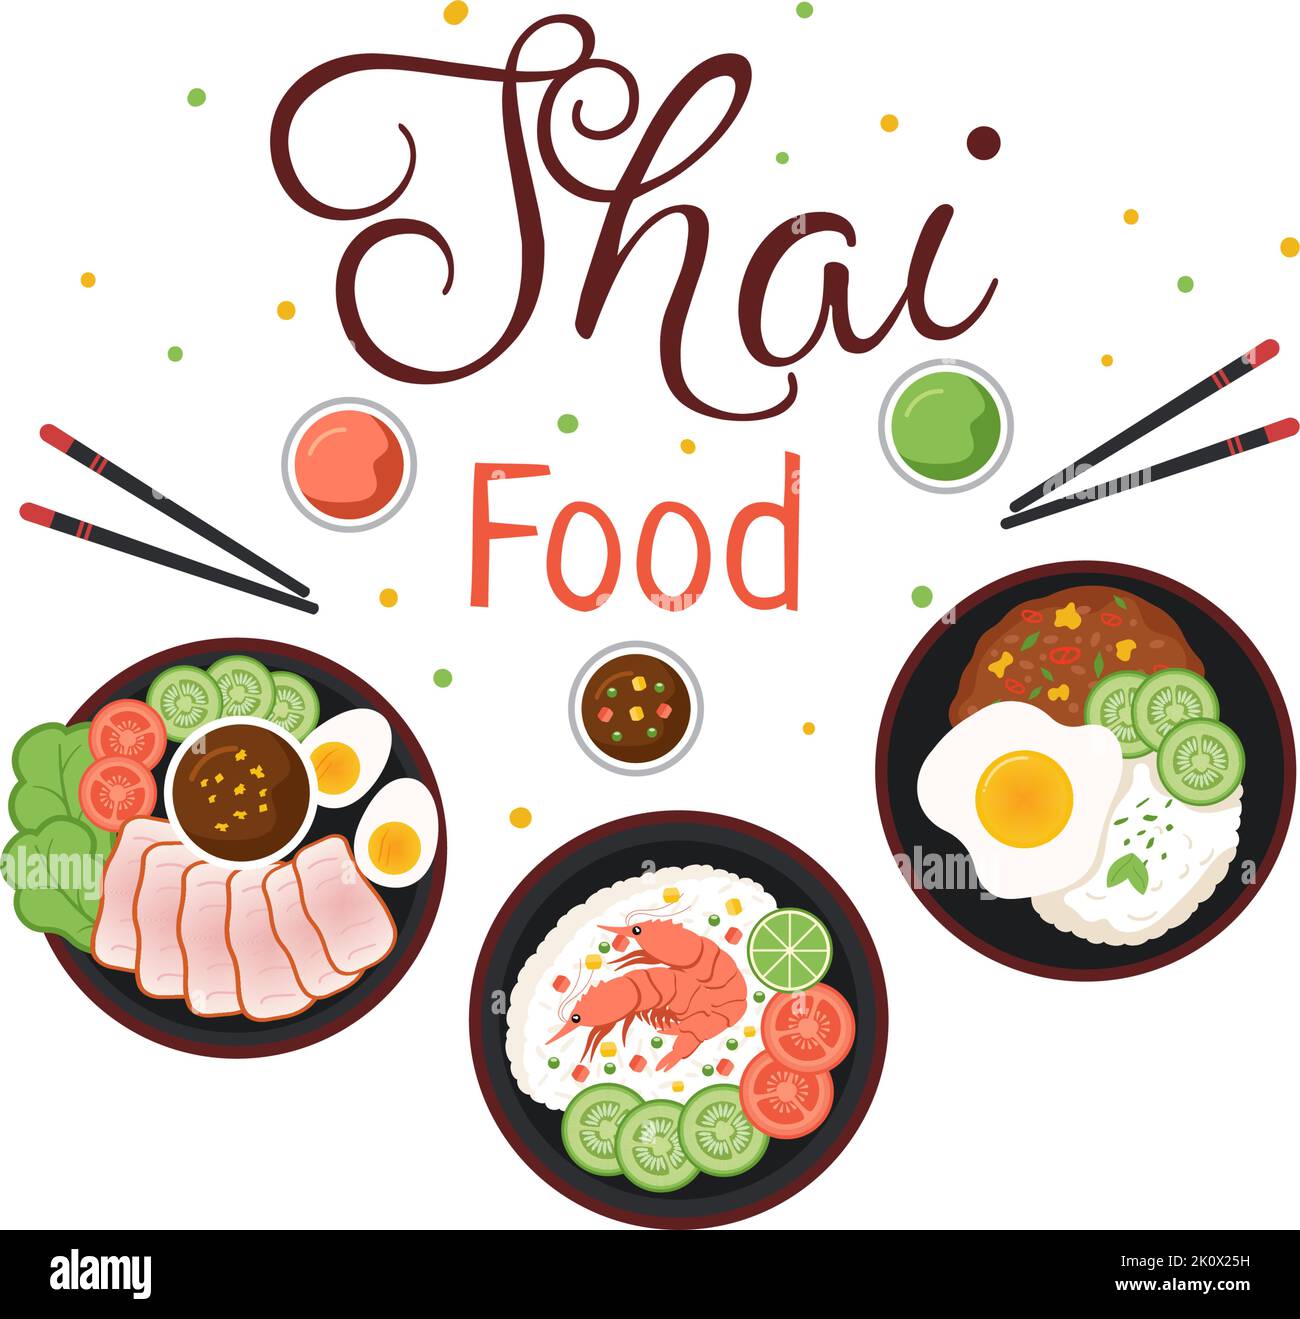 Tradizionale Thailand Food Template Cartoon Hand Drawed Illustrazione varie di cucina tailandese Design Illustrazione Vettoriale